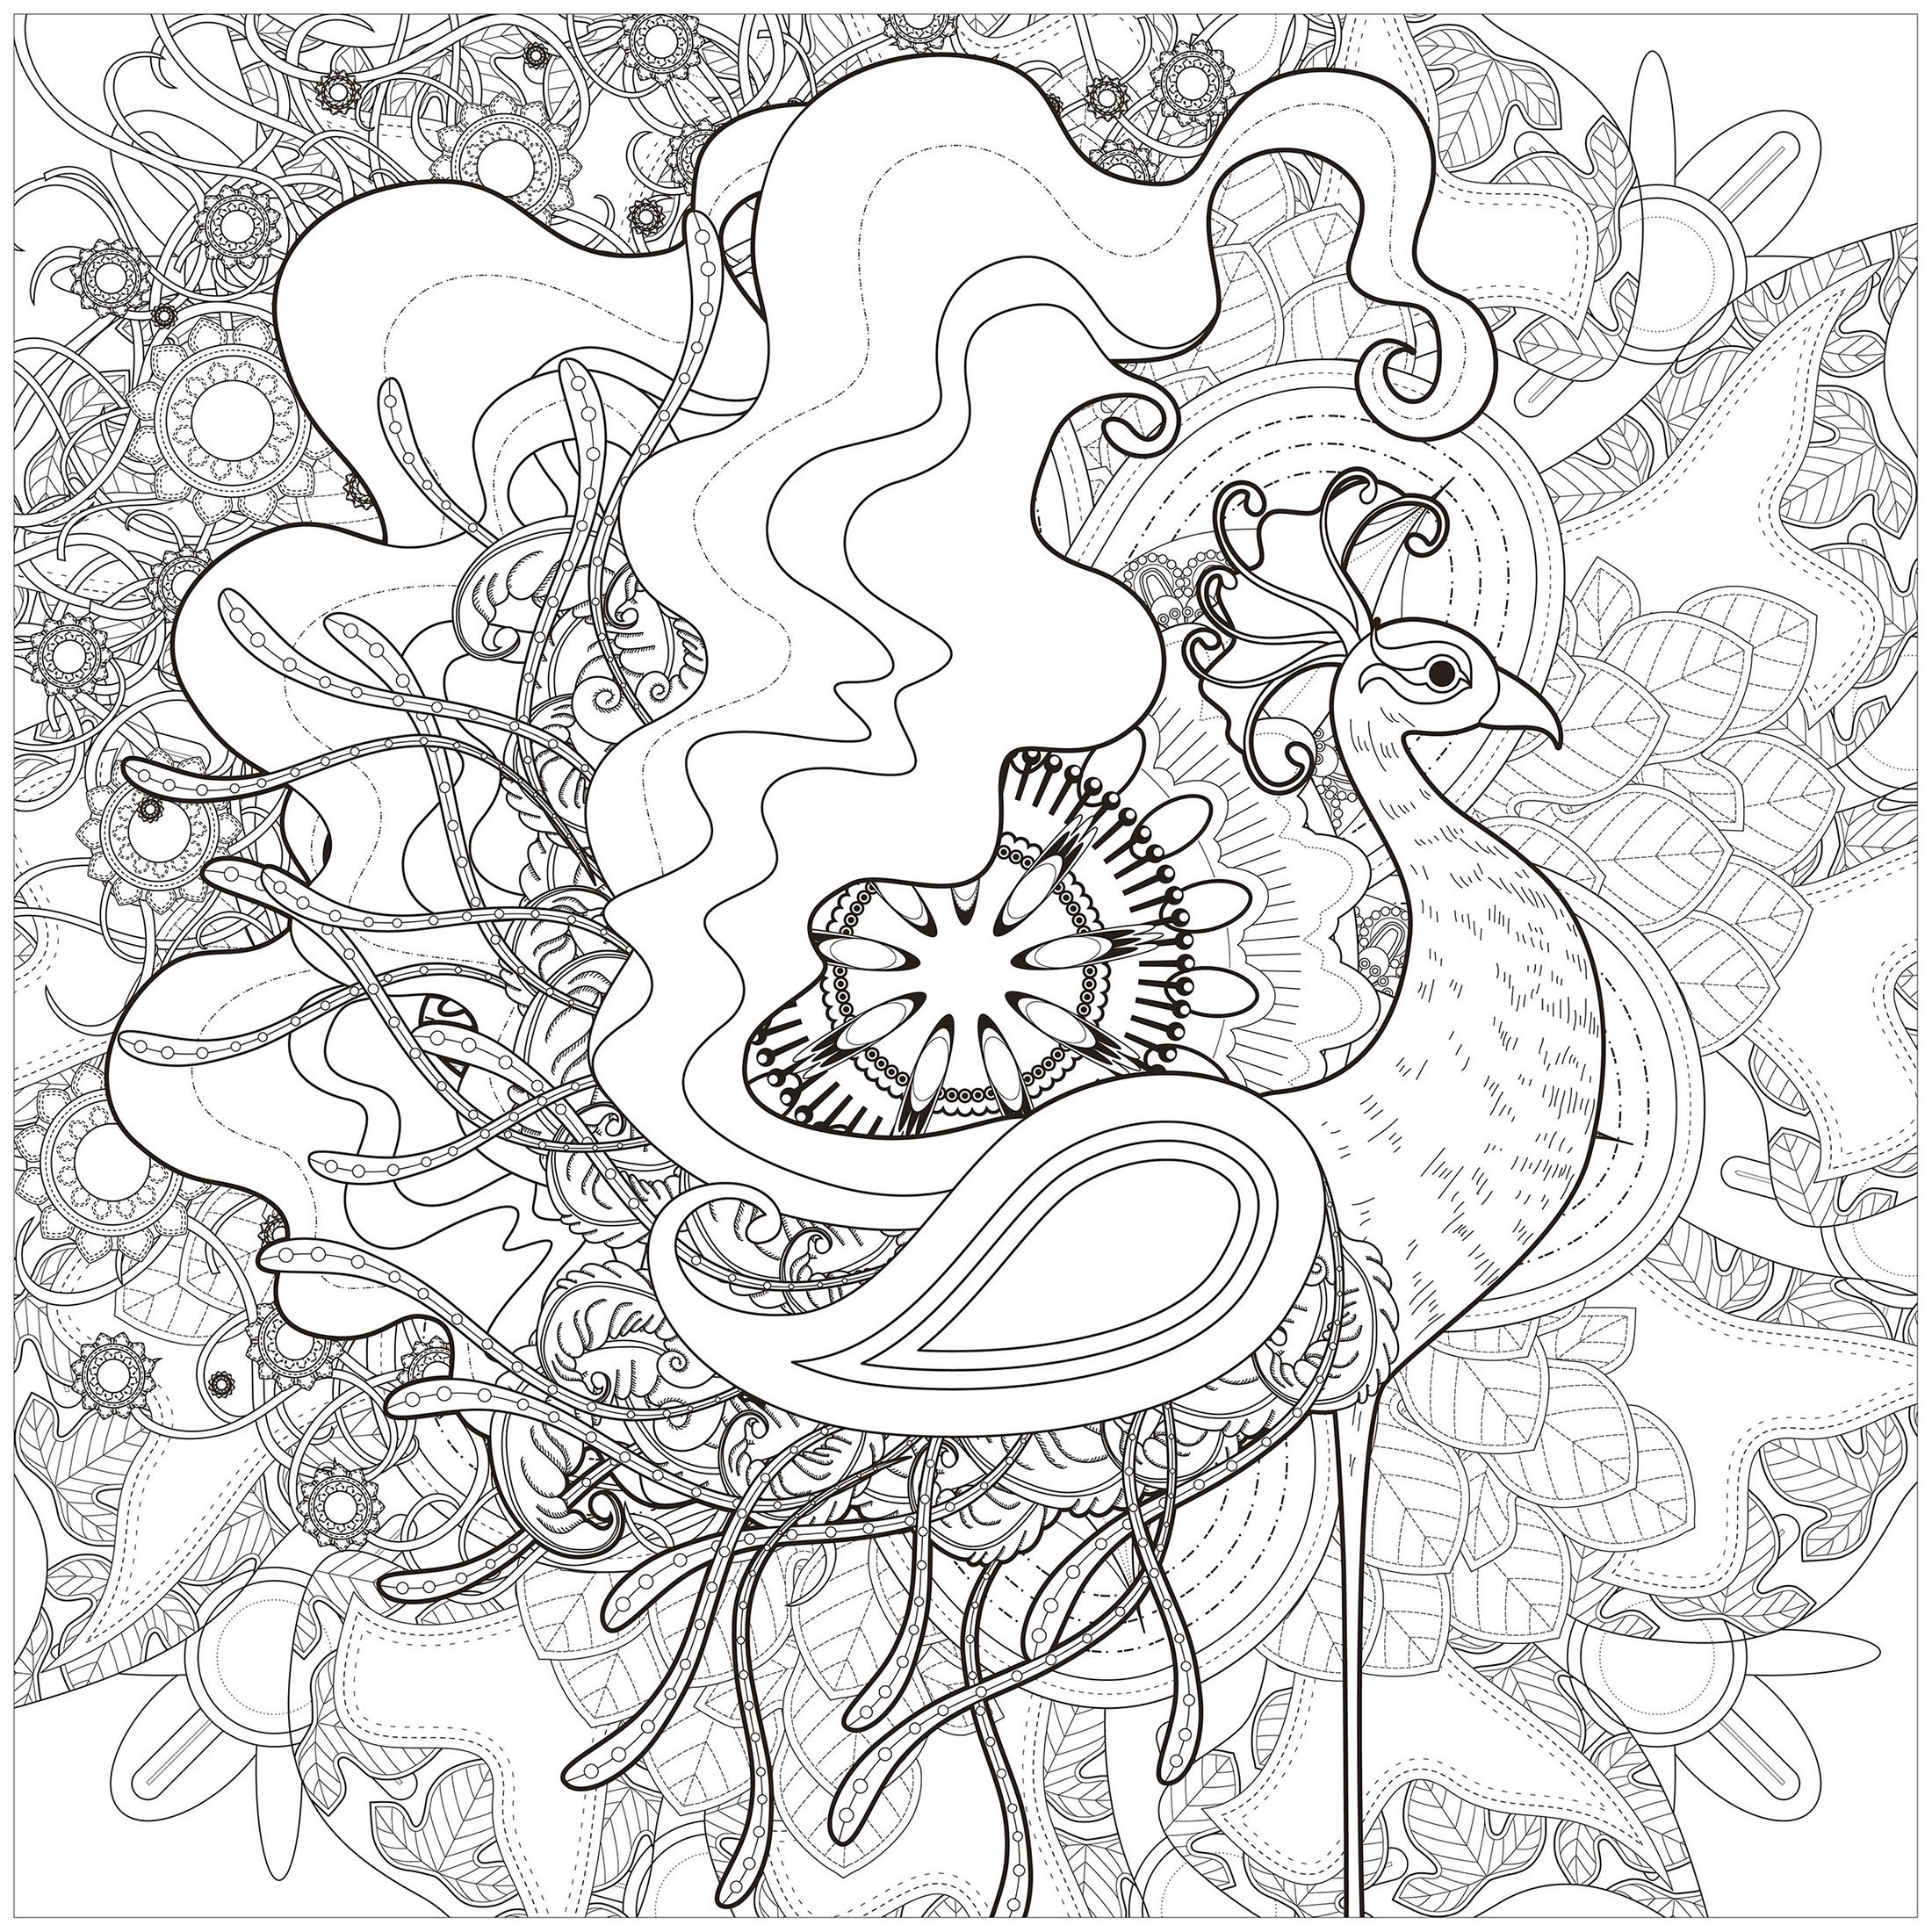 Erhabener Pfau auf abstraktem Hintergrund, gezeichnet mit Linien unterschiedlicher Dicke, Quelle : 123rf   Künstler : Kchung